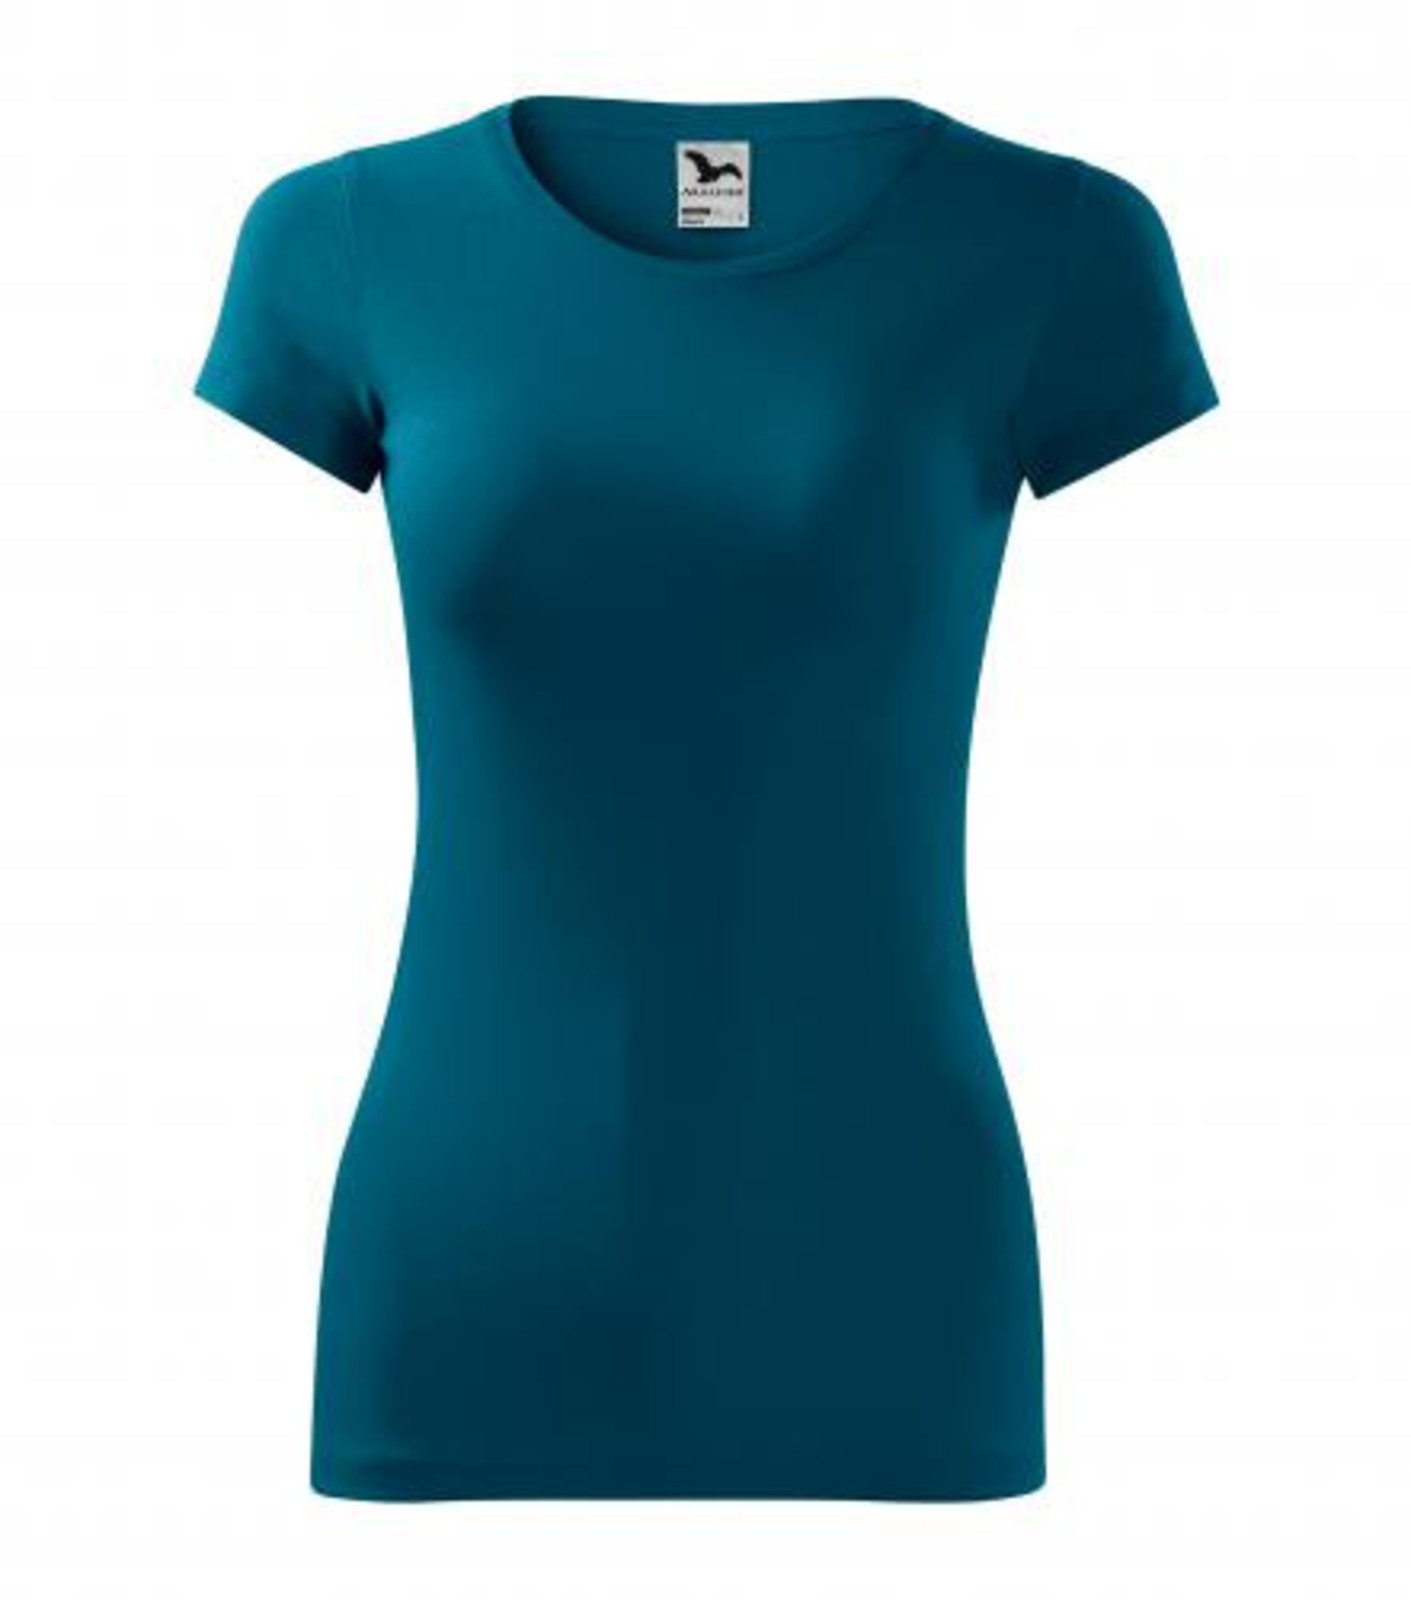 Dámske tričko Adler Glance 141 - veľkosť: M, farba: petrolejová modrá